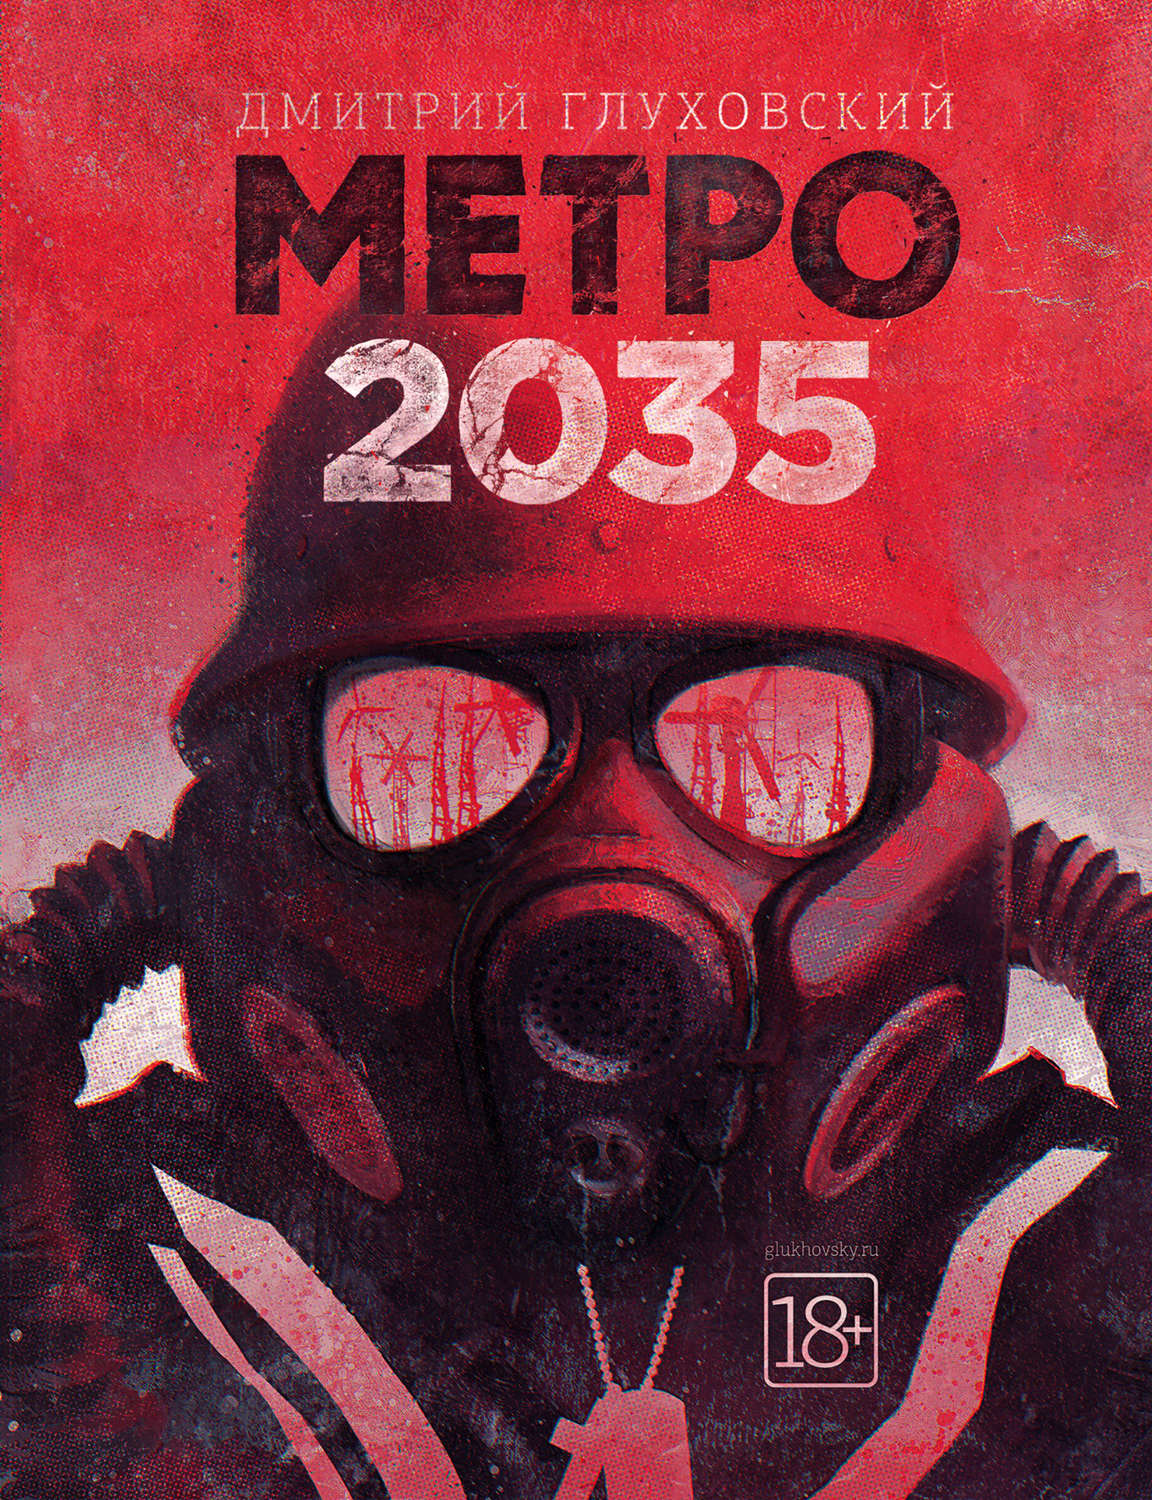 Метро 2035 книга скачать epub торрент